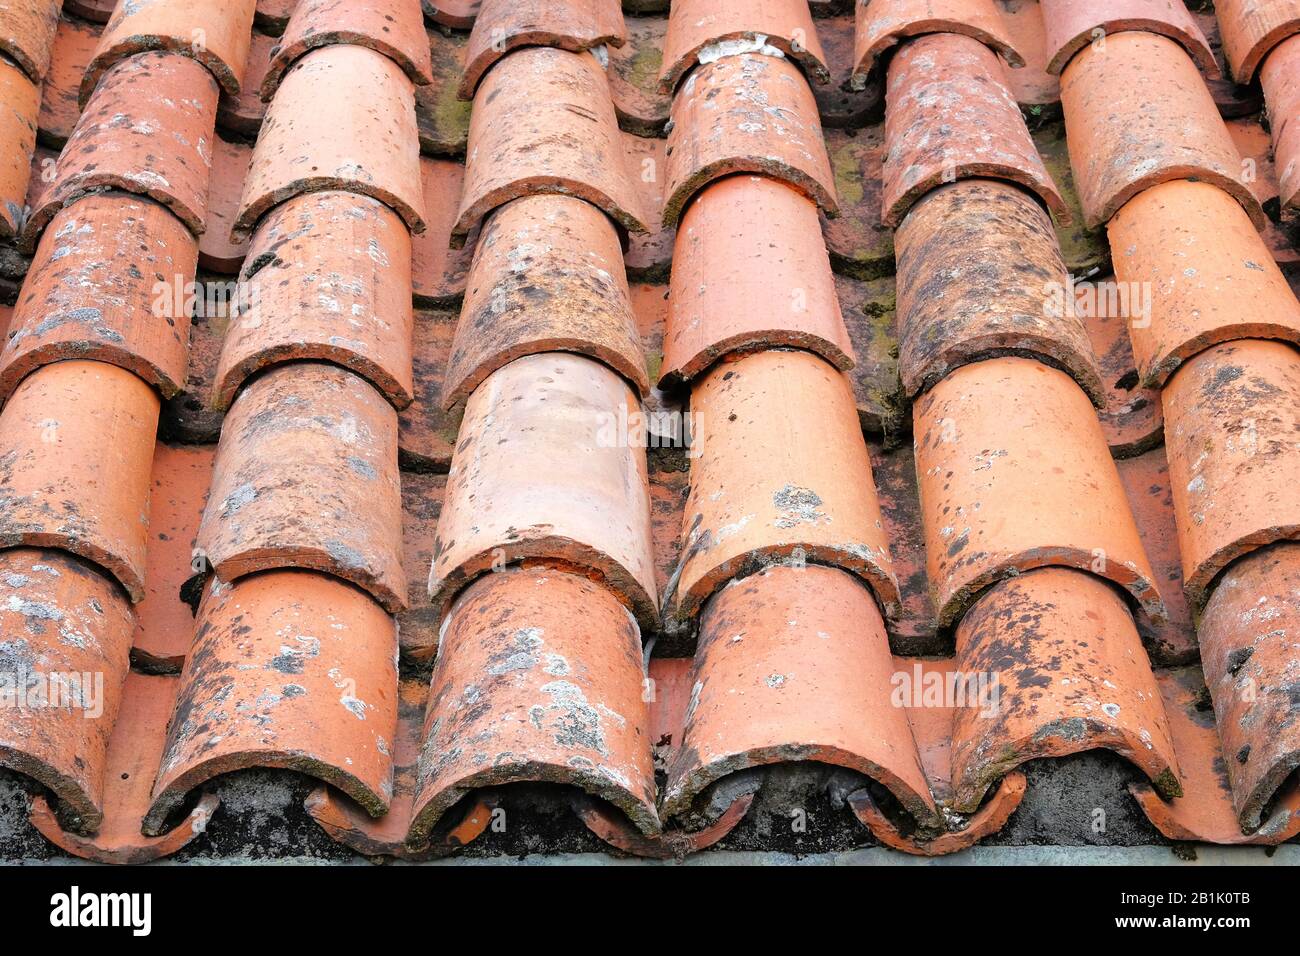 Vieilles tuiles de toit en terre cuite sur le toit d'une ancienne maison. Motif de tuiles arrière-plan de toit. Banque D'Images